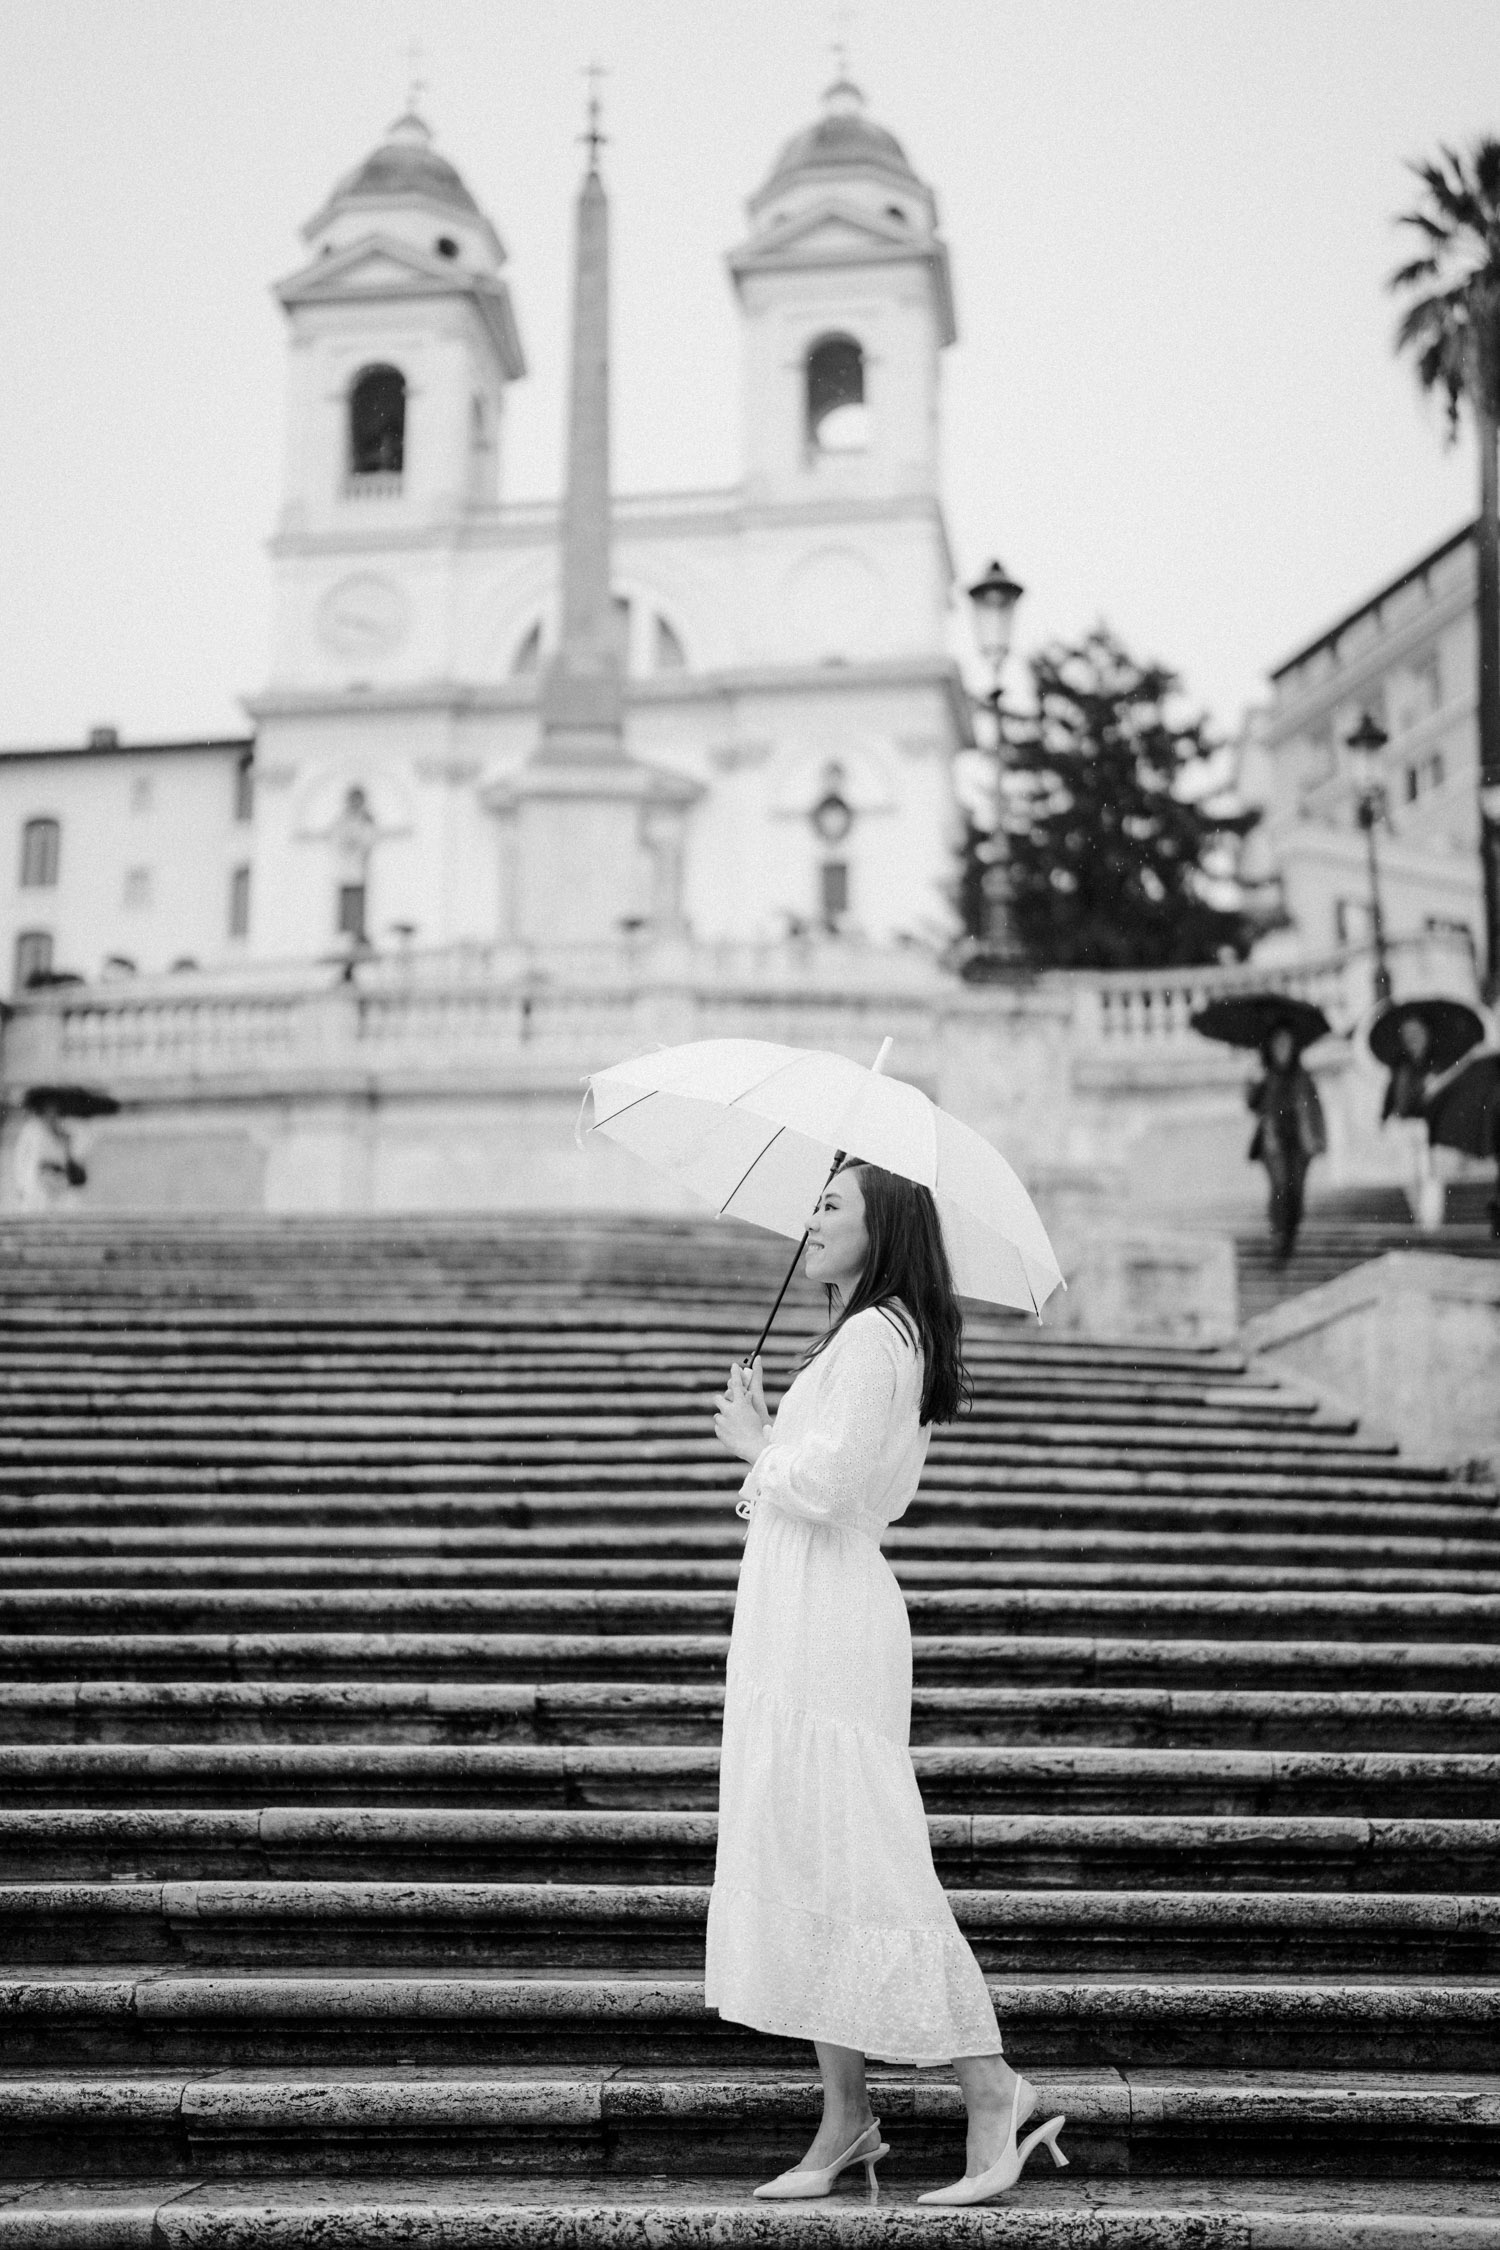 Rainy day romantic photoshoot in Rome